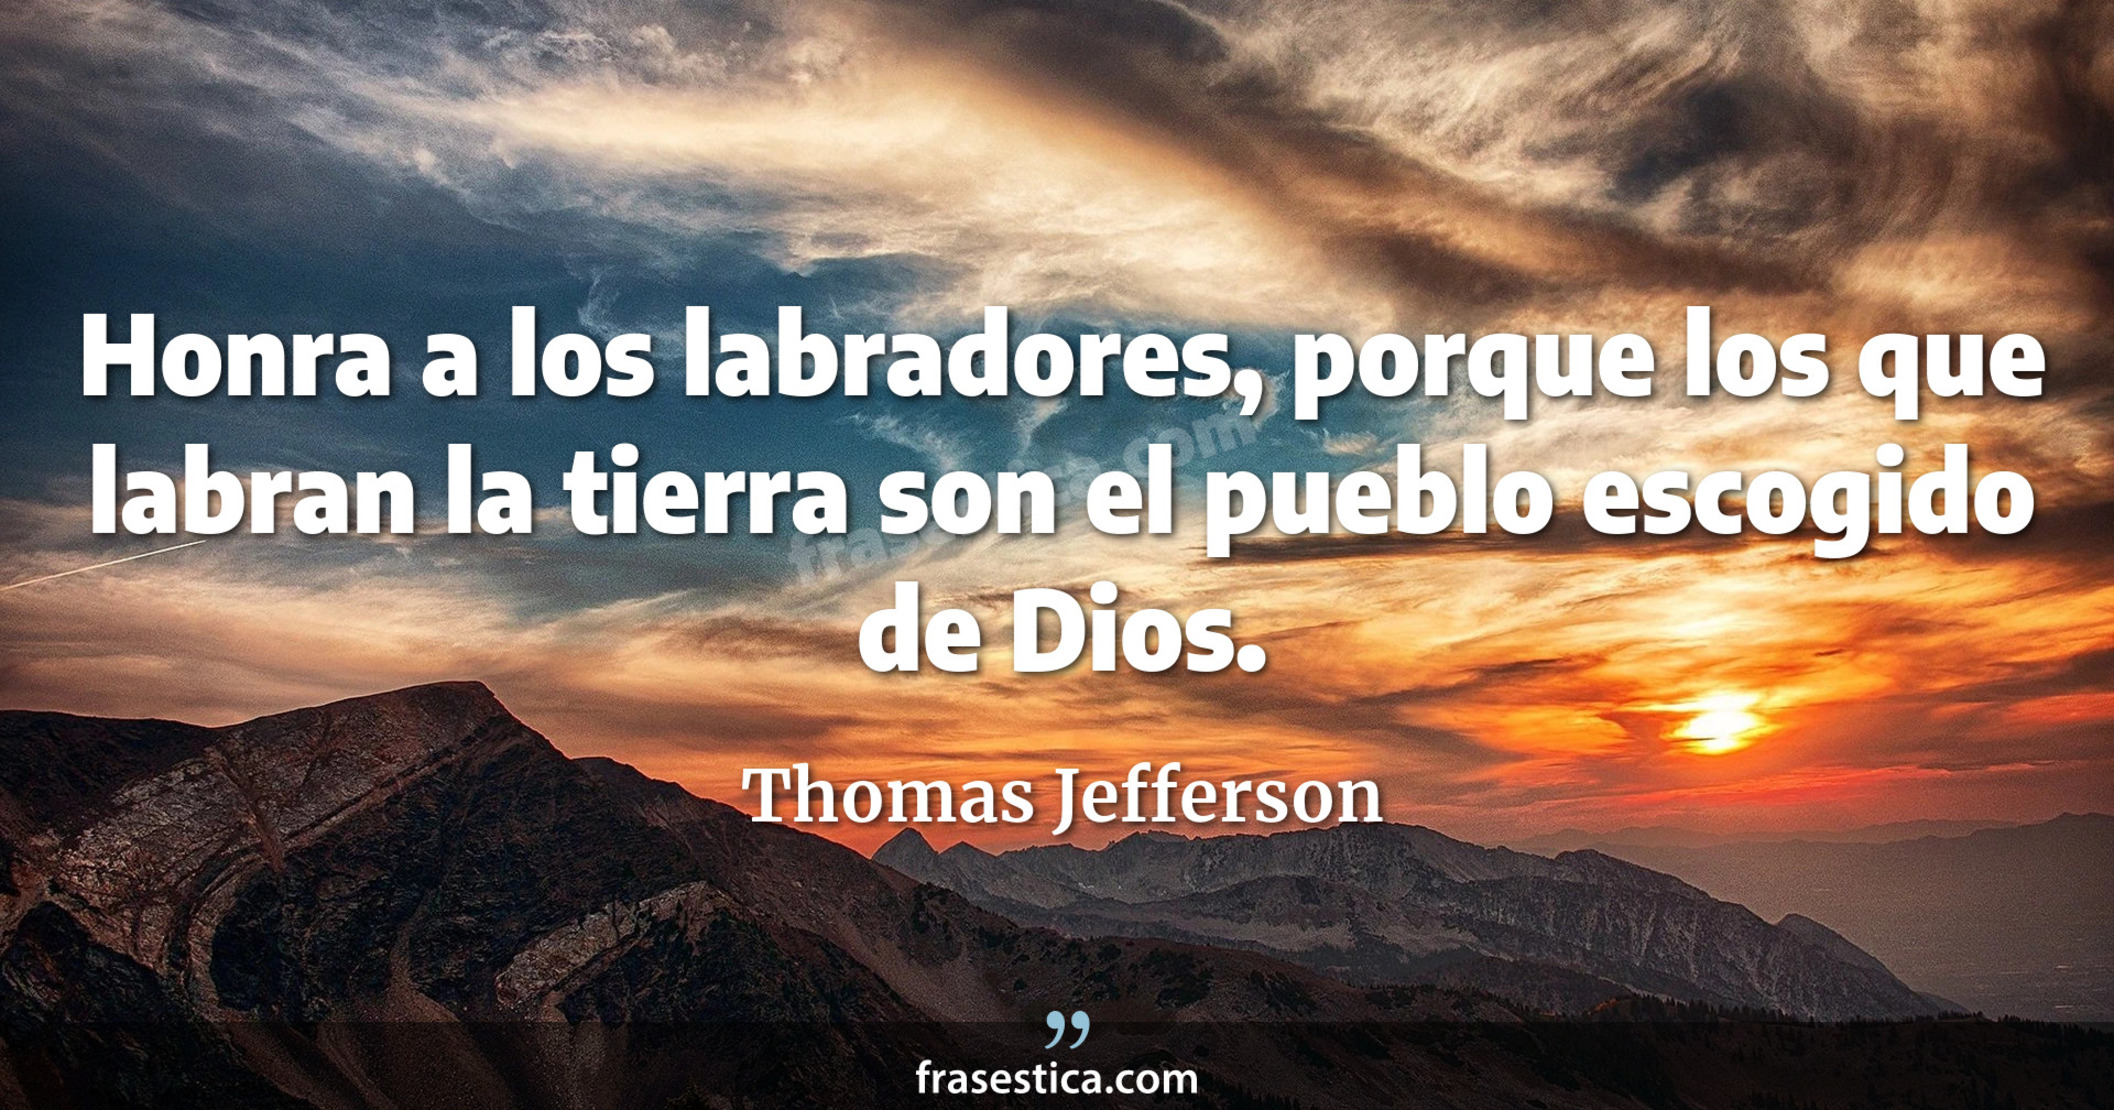 Honra a los labradores, porque los que labran la tierra son el pueblo escogido de Dios. - Thomas Jefferson